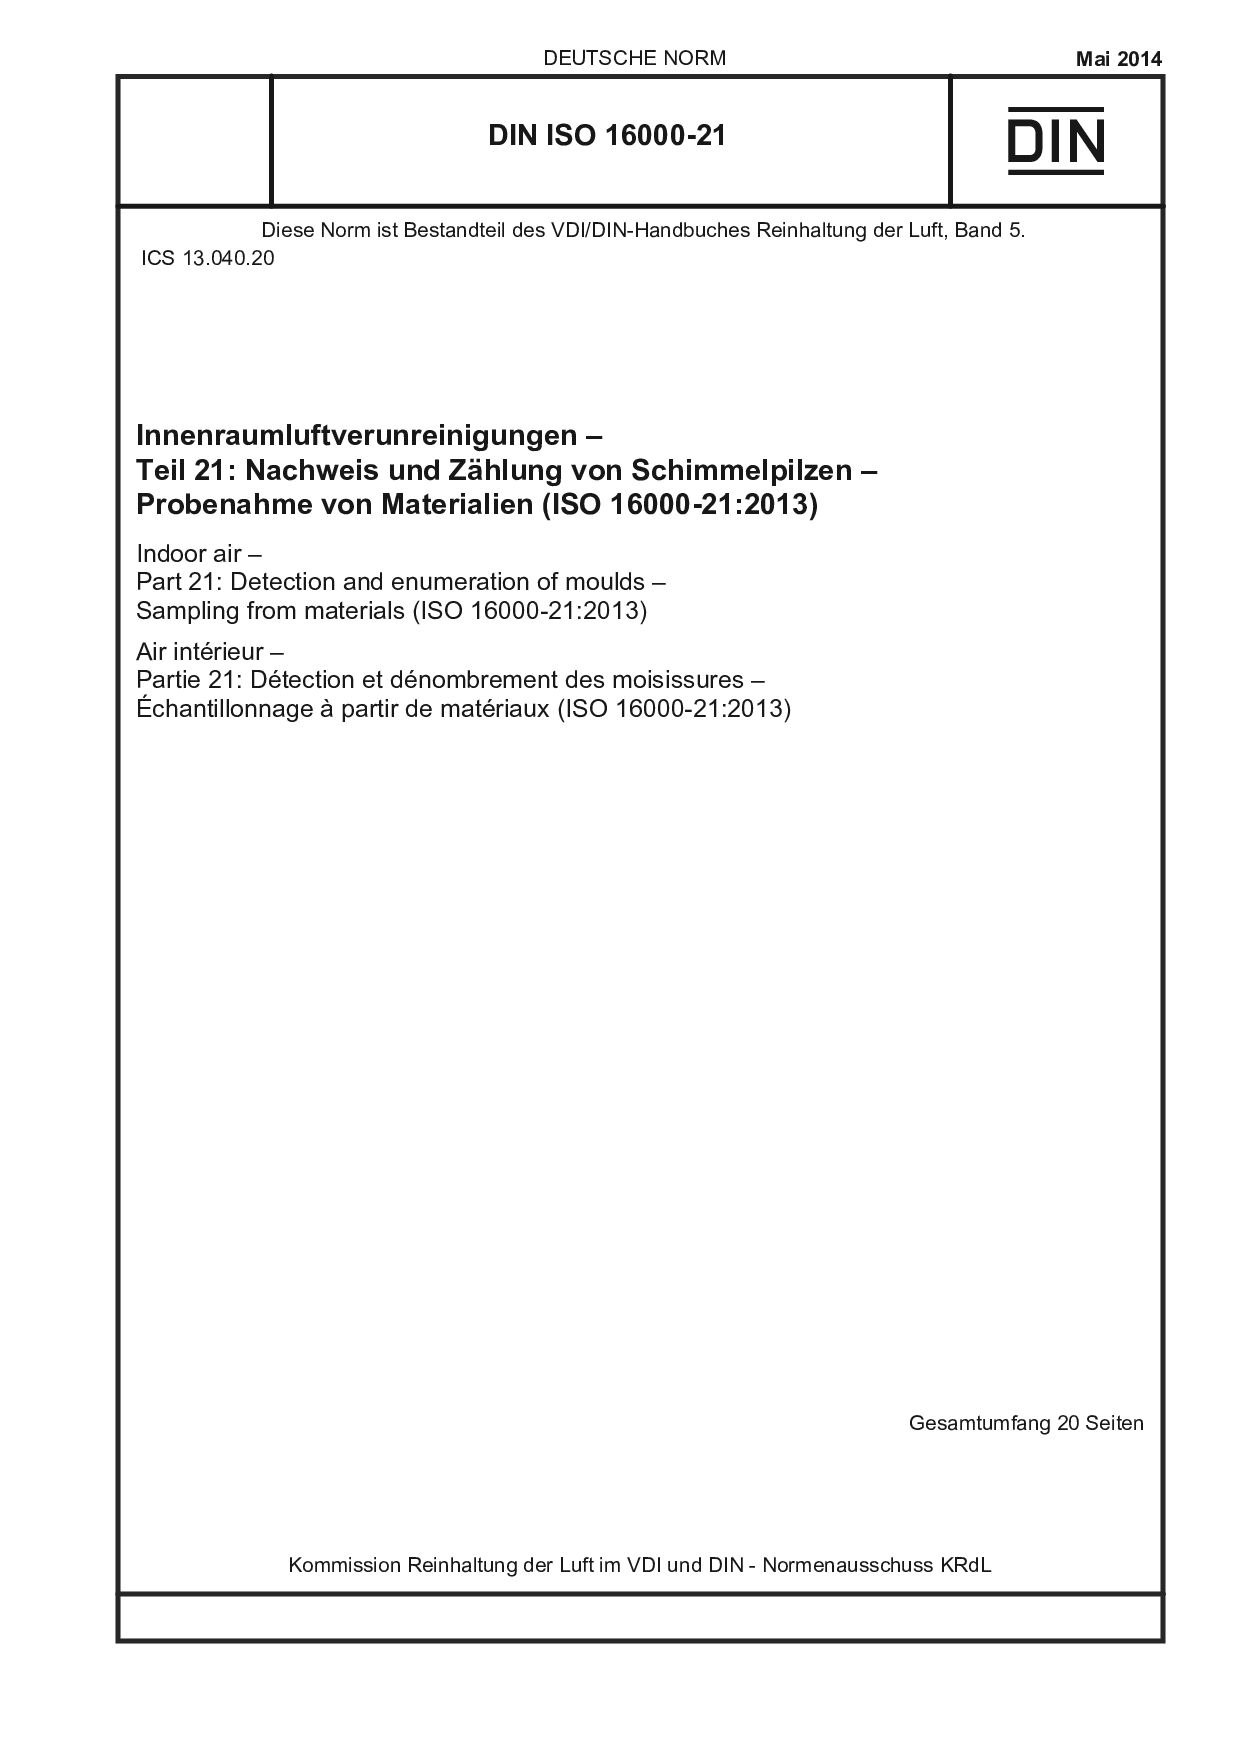 DIN ISO 16000-21:2014封面图